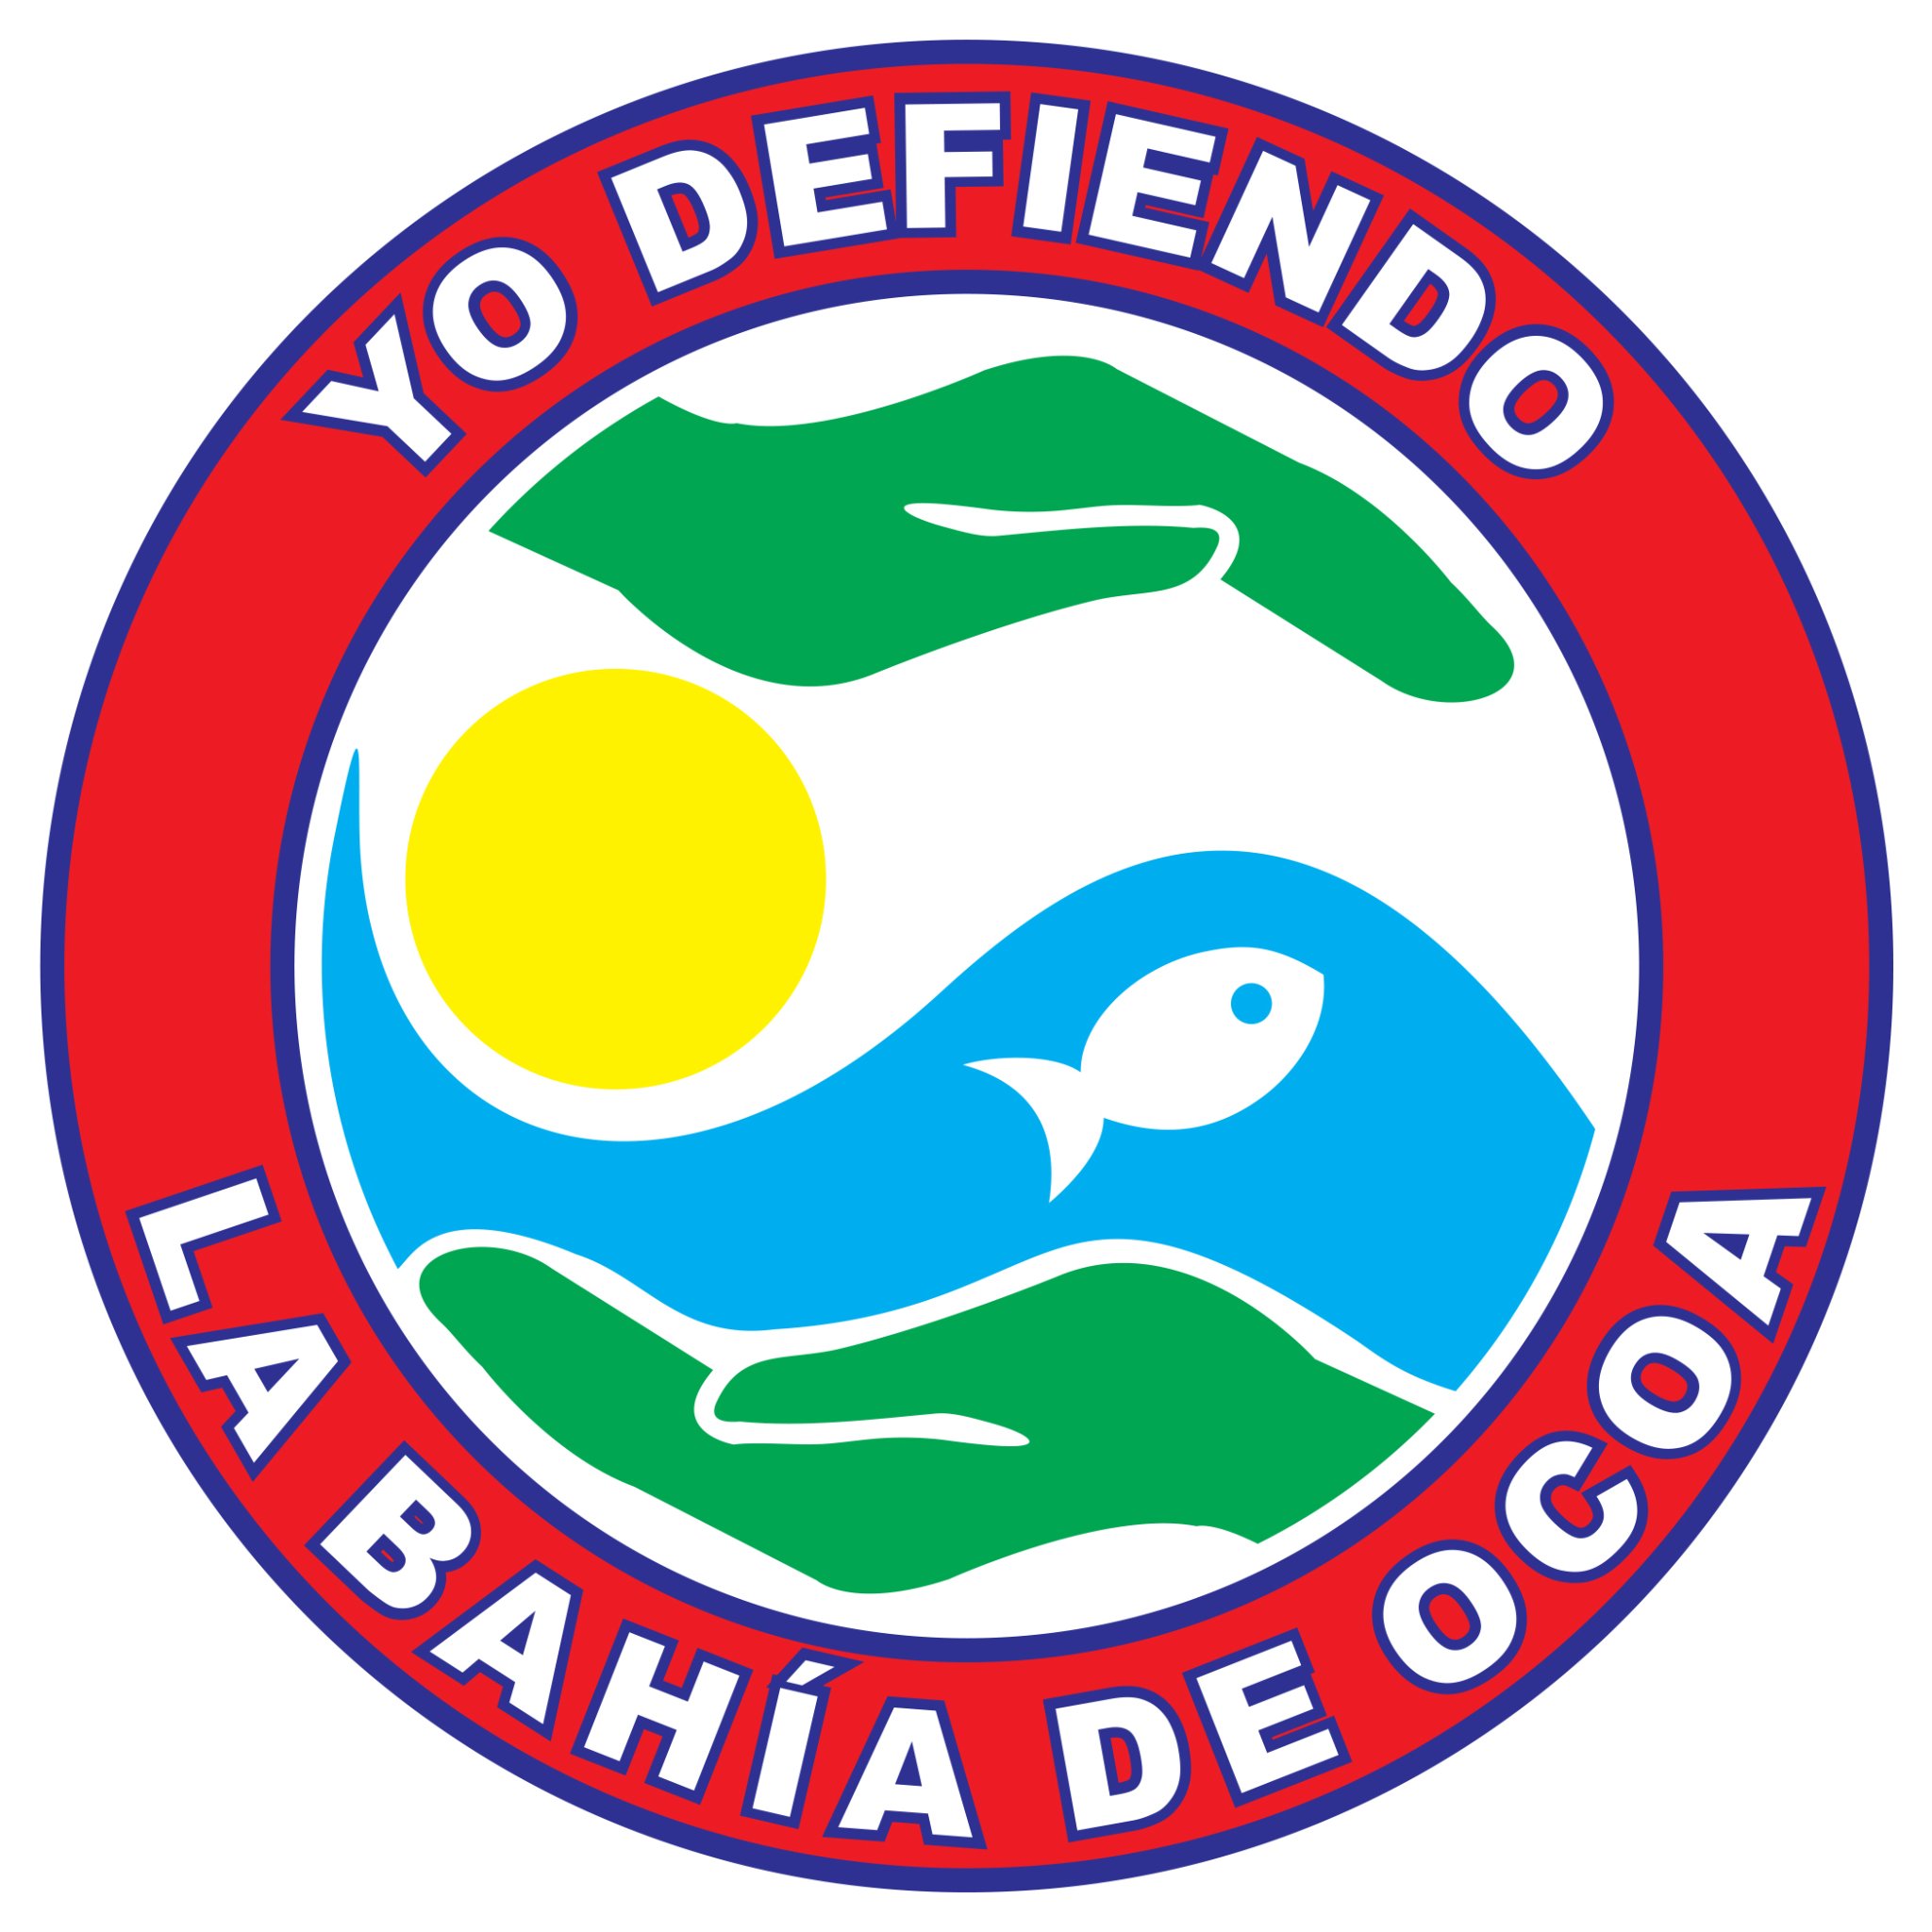 DefiendoBahiaO Profile Picture